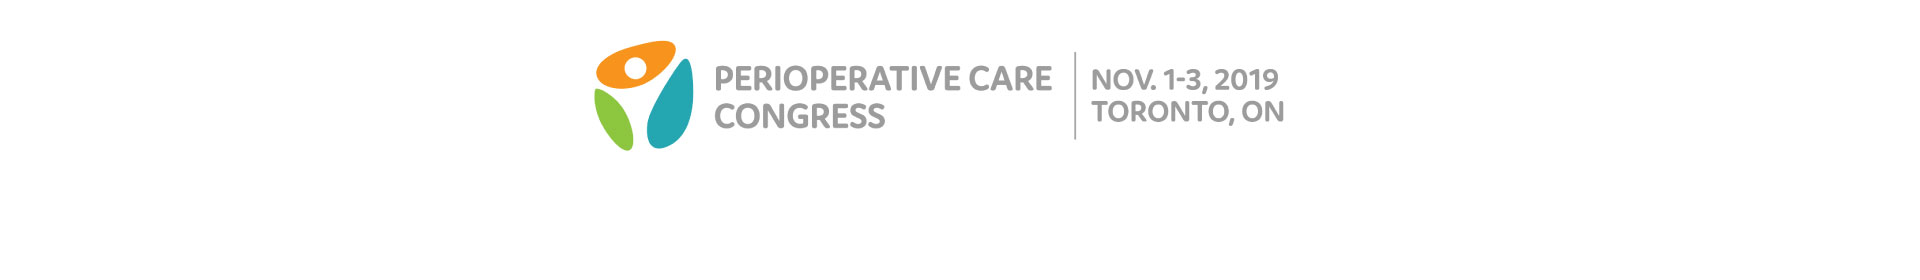 Perioperative Care Congress Event Banner